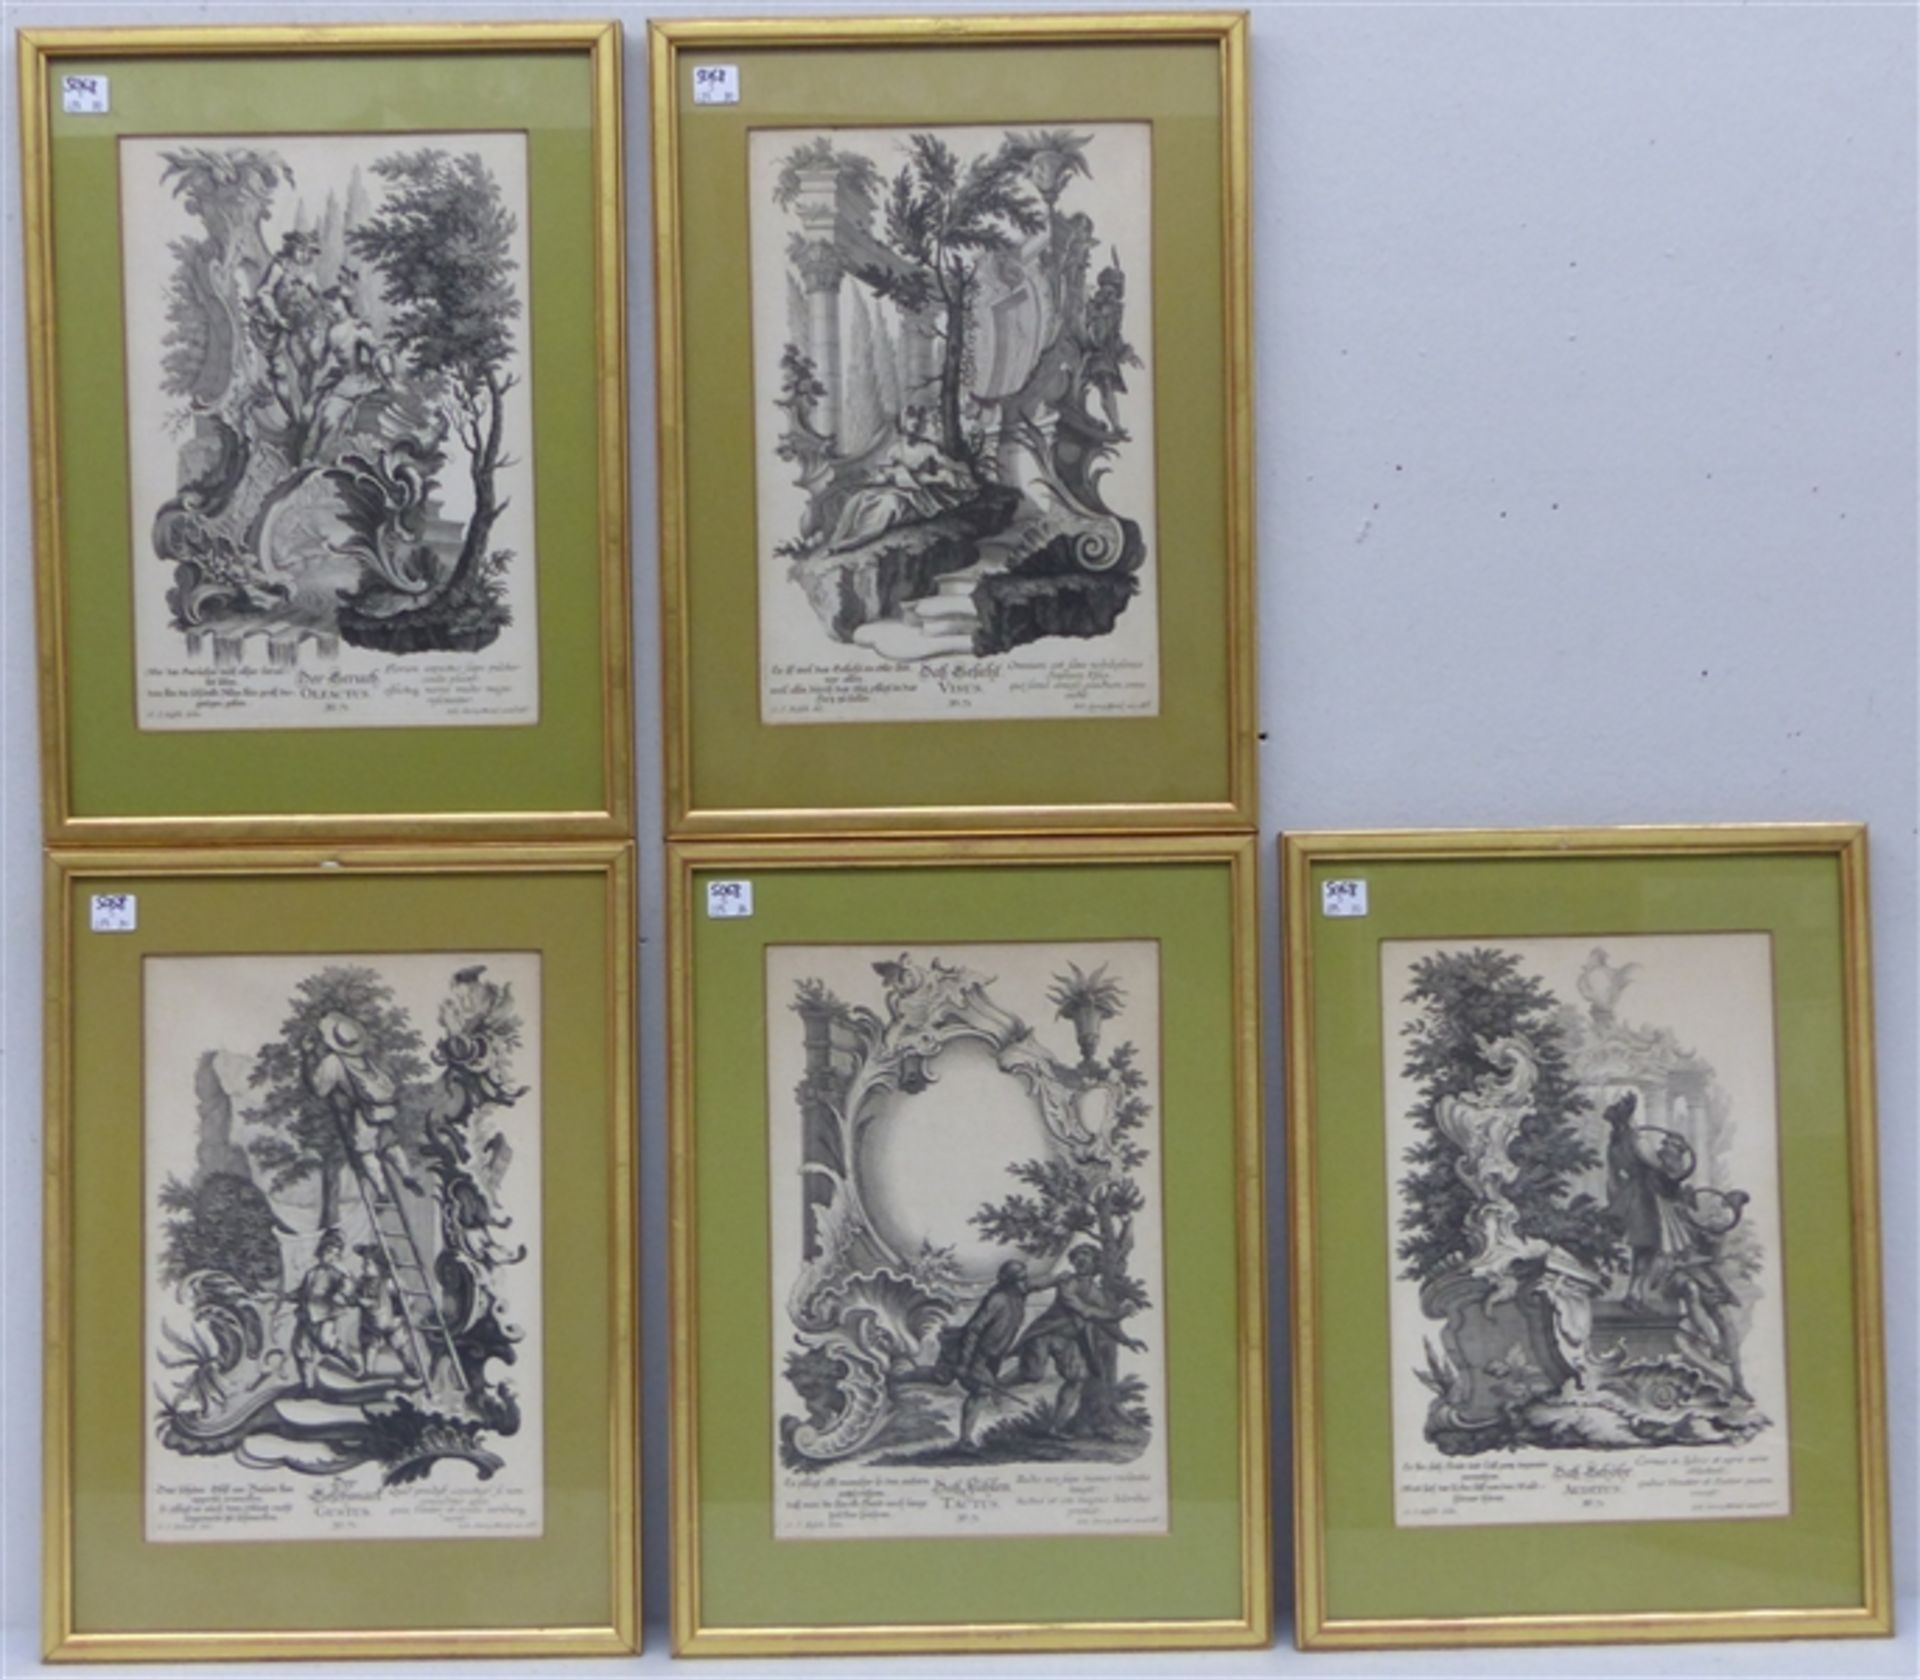 5 Kupferstiche, 18. Jh. von Johann Georg Hertel, "figürliche Darstellungen der fünf Sinne", mit